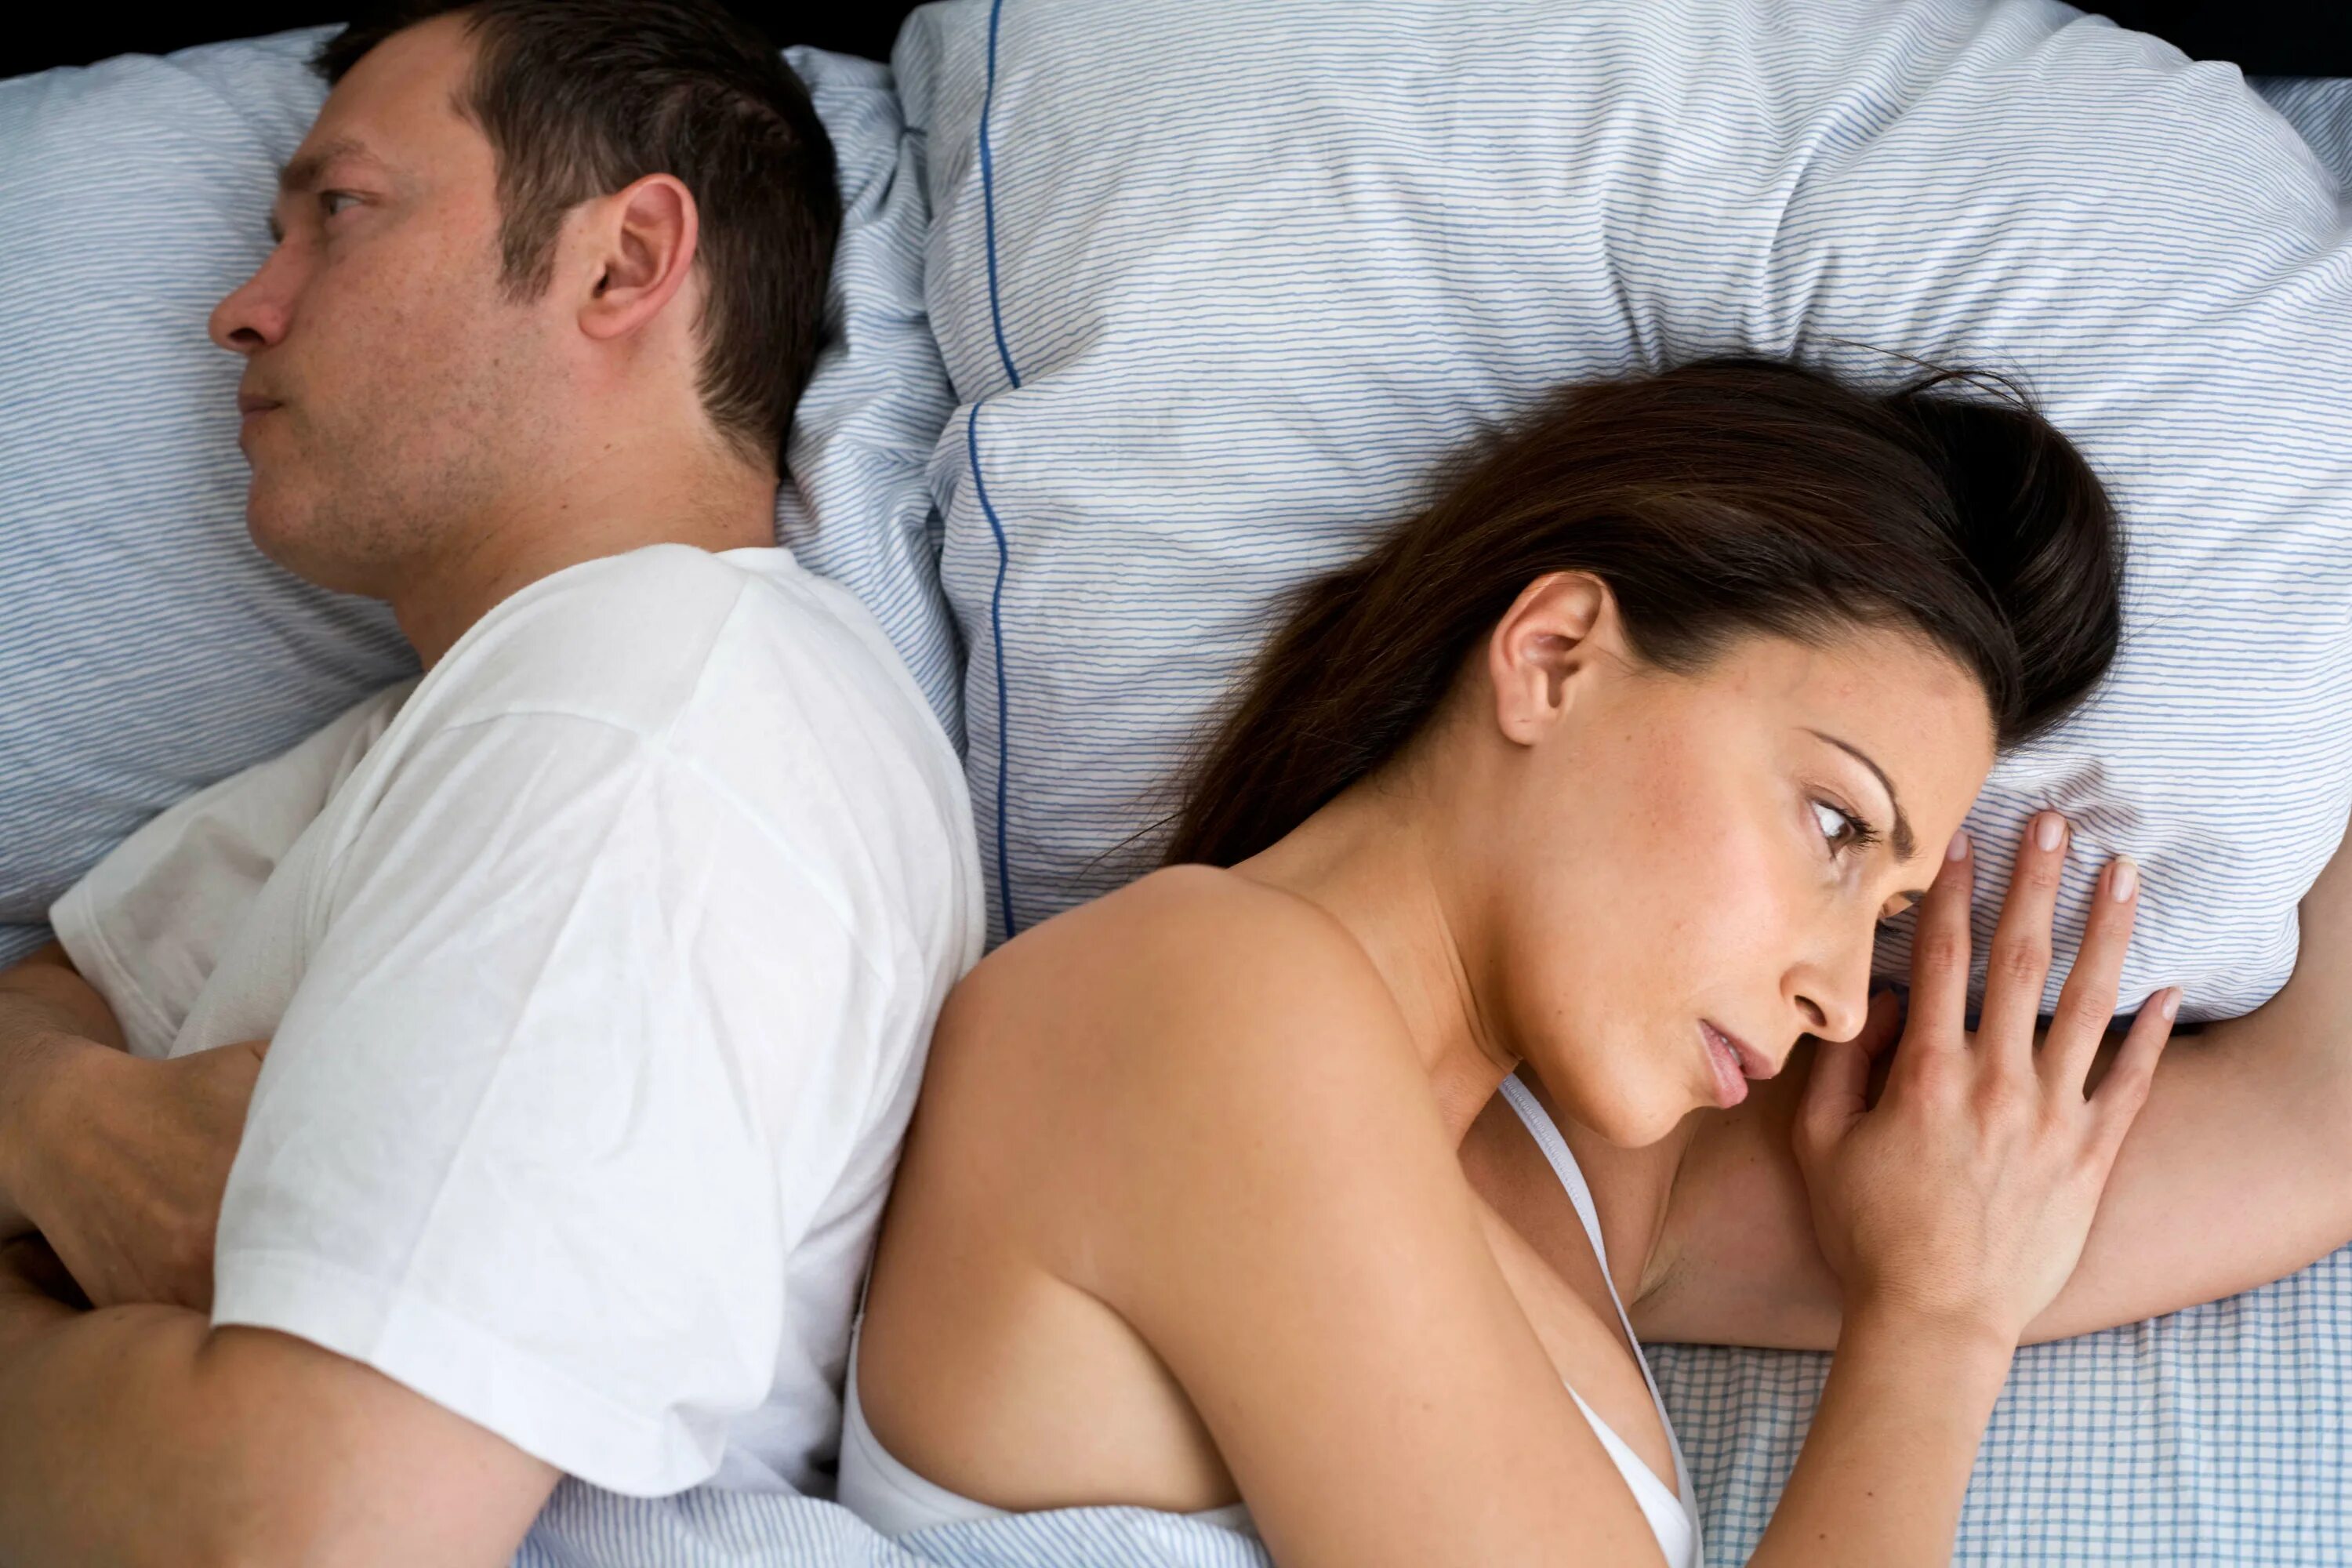 Половые сношения женщиной. Мужчина и женщина в постели. Половое влечение. Проблемы в интимной жизни. Супружеские отношения в постели.